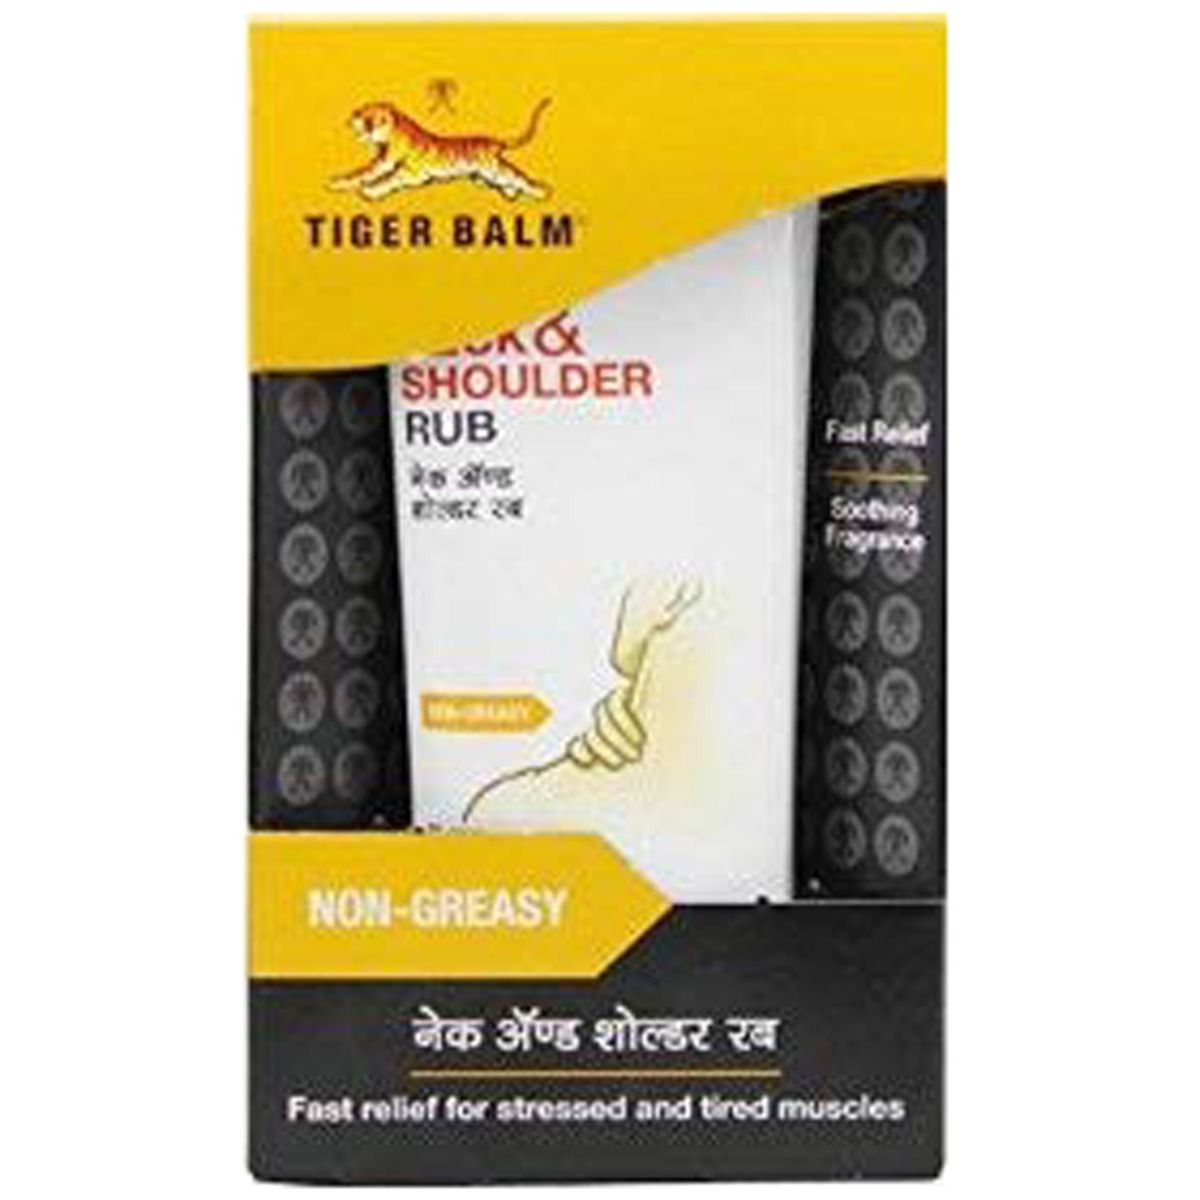 Tiger Balm Neck&Shoulder Rub 30g, Pack of 1 